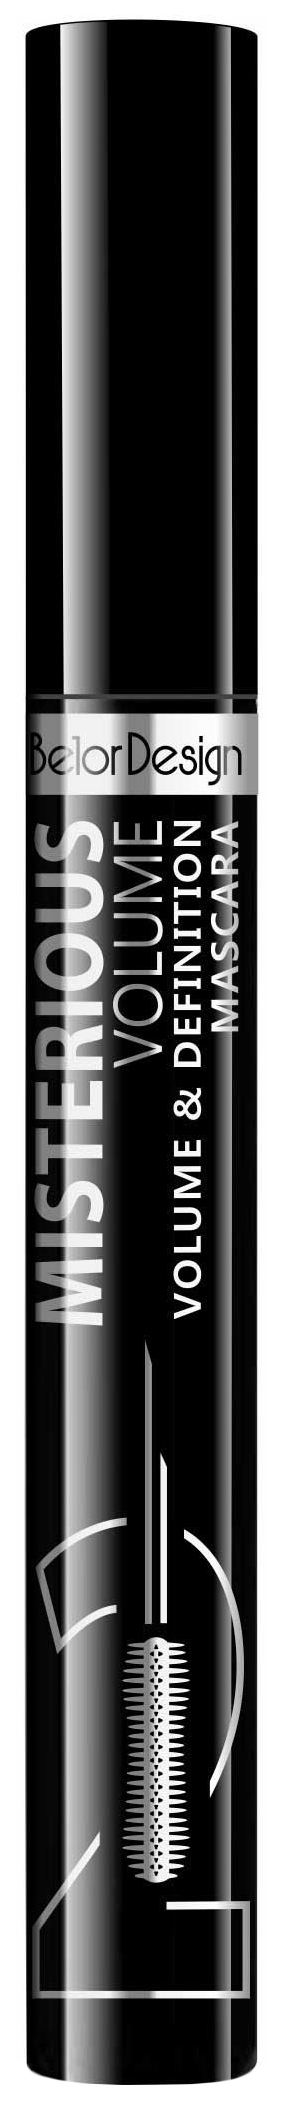 Тушь для ресниц Belor Design Misterious Volume объёмная, разделяющая, чёрная belor design тушь для ресниц maximission суперобъемная